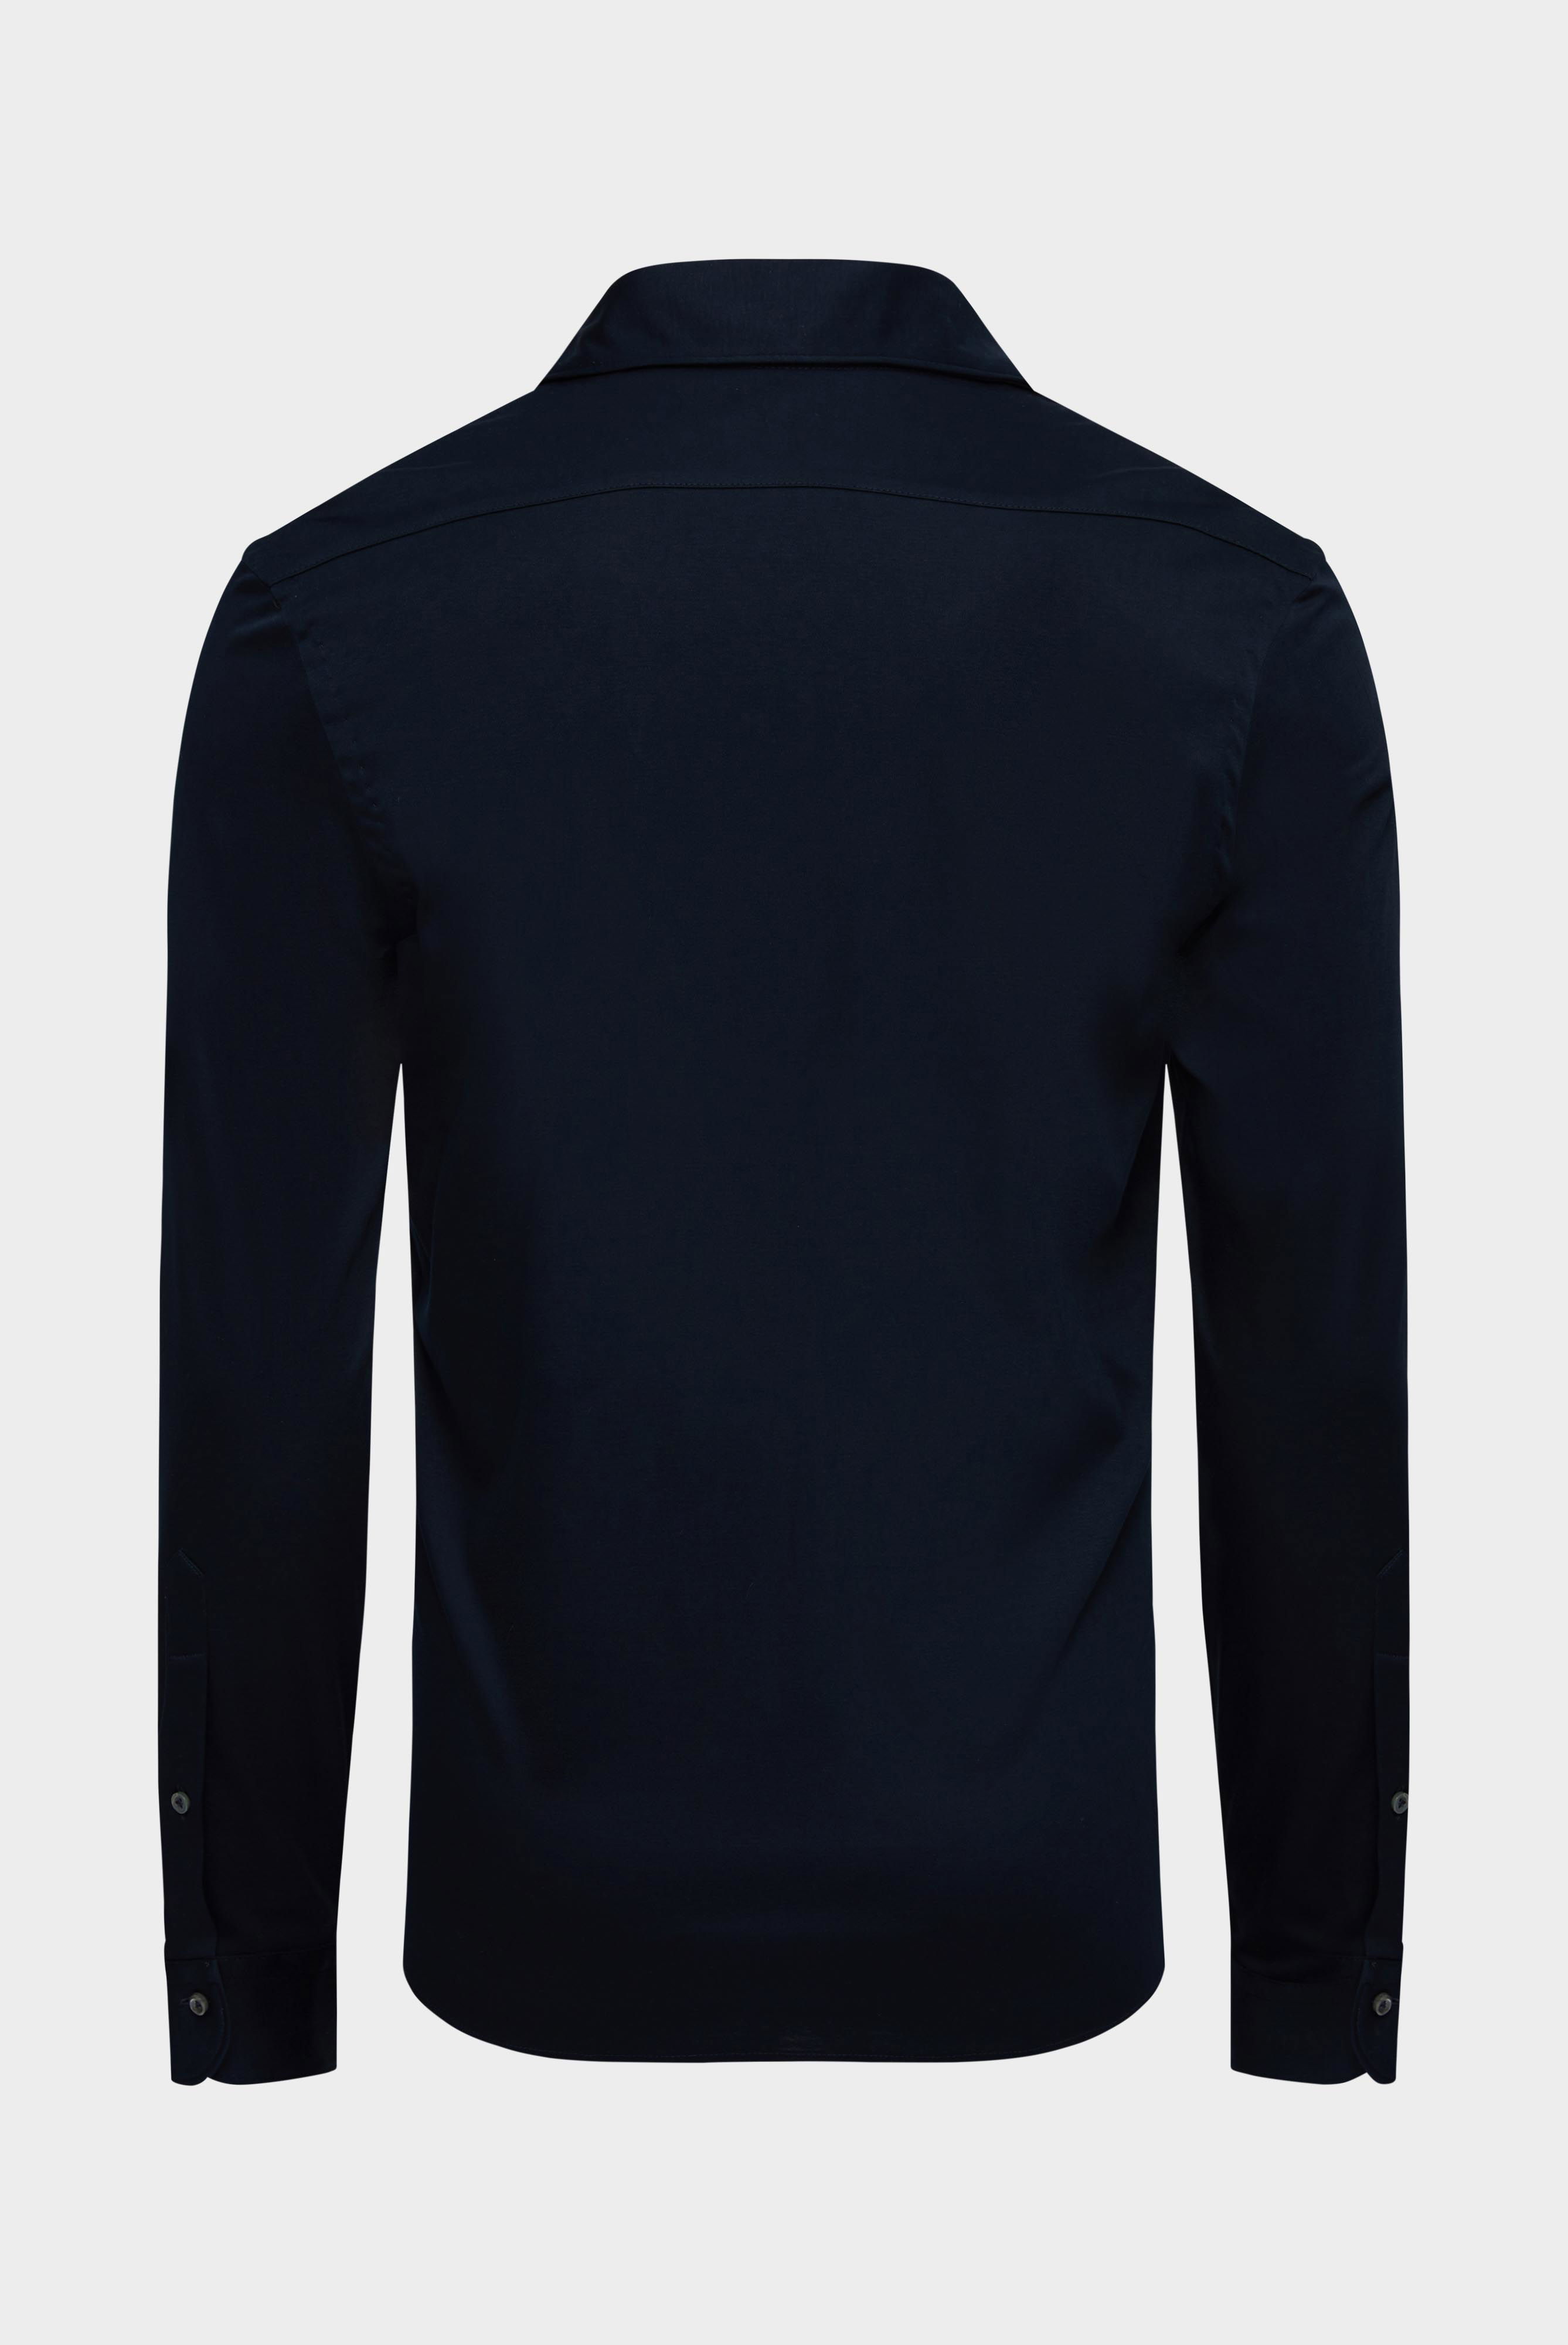 Jersey Hemden+Jersey Hemd aus Schweizer Baumwolle Slim Fit+20.1682.UC.180031.790.M